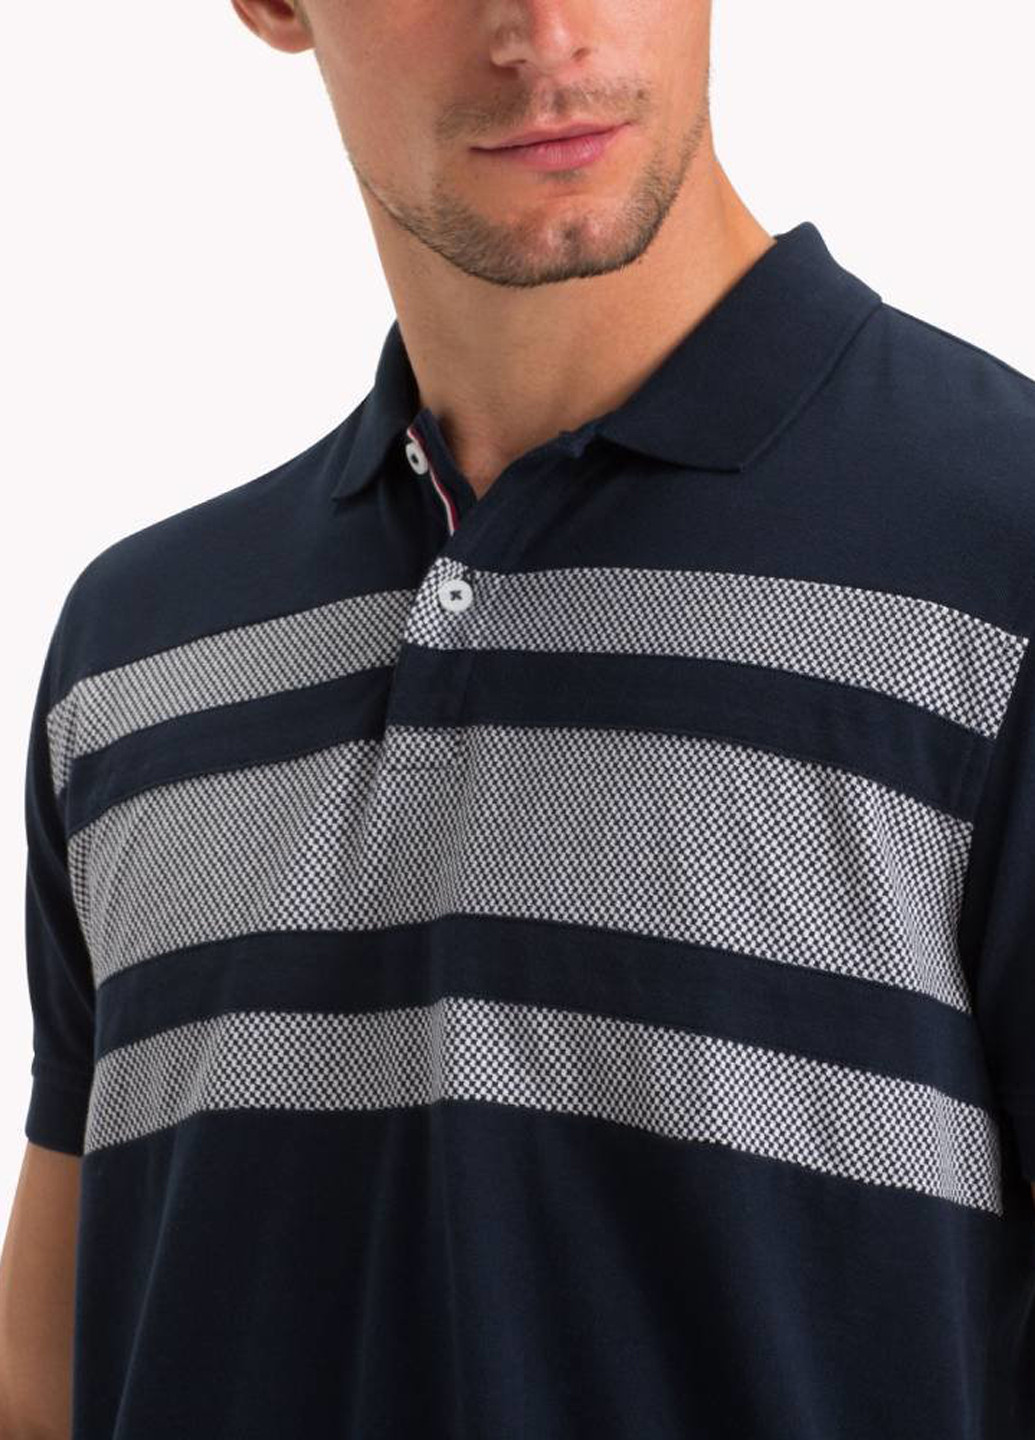 Темно-синяя футболка-поло для мужчин Tommy Hilfiger в полоску